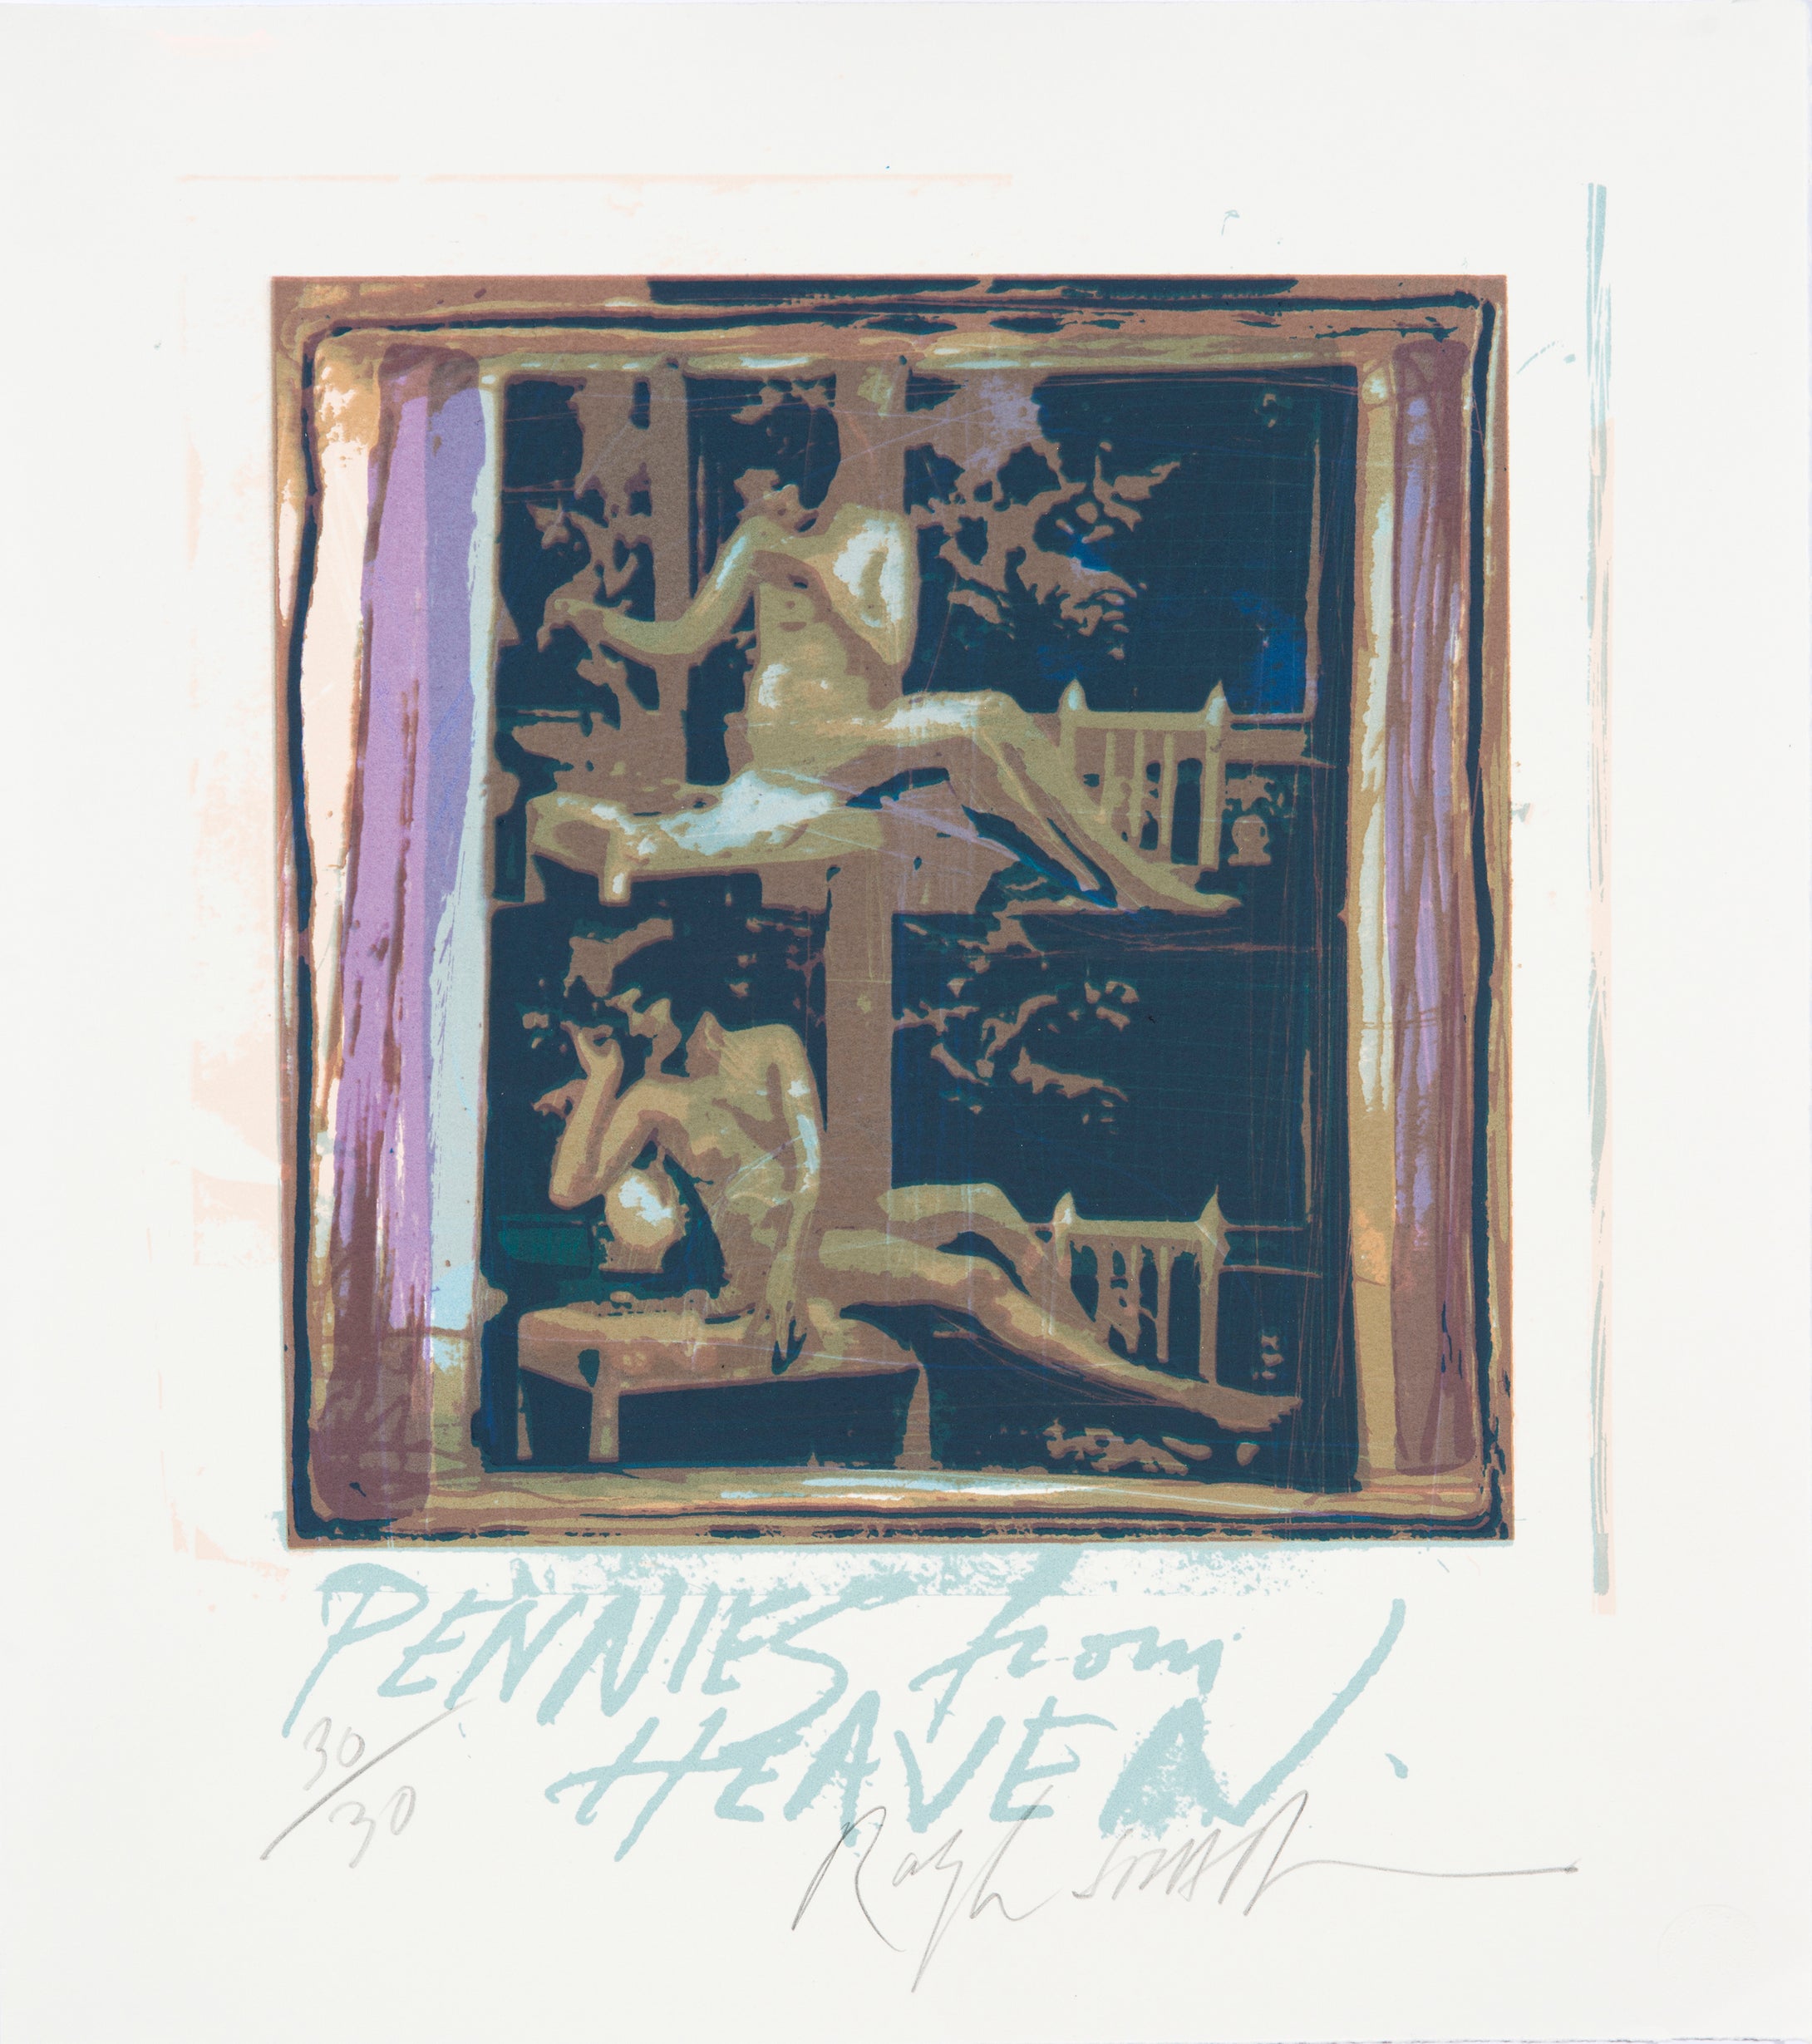 Ralph Steadman: Intimate Art Series - Pennies From Heaven